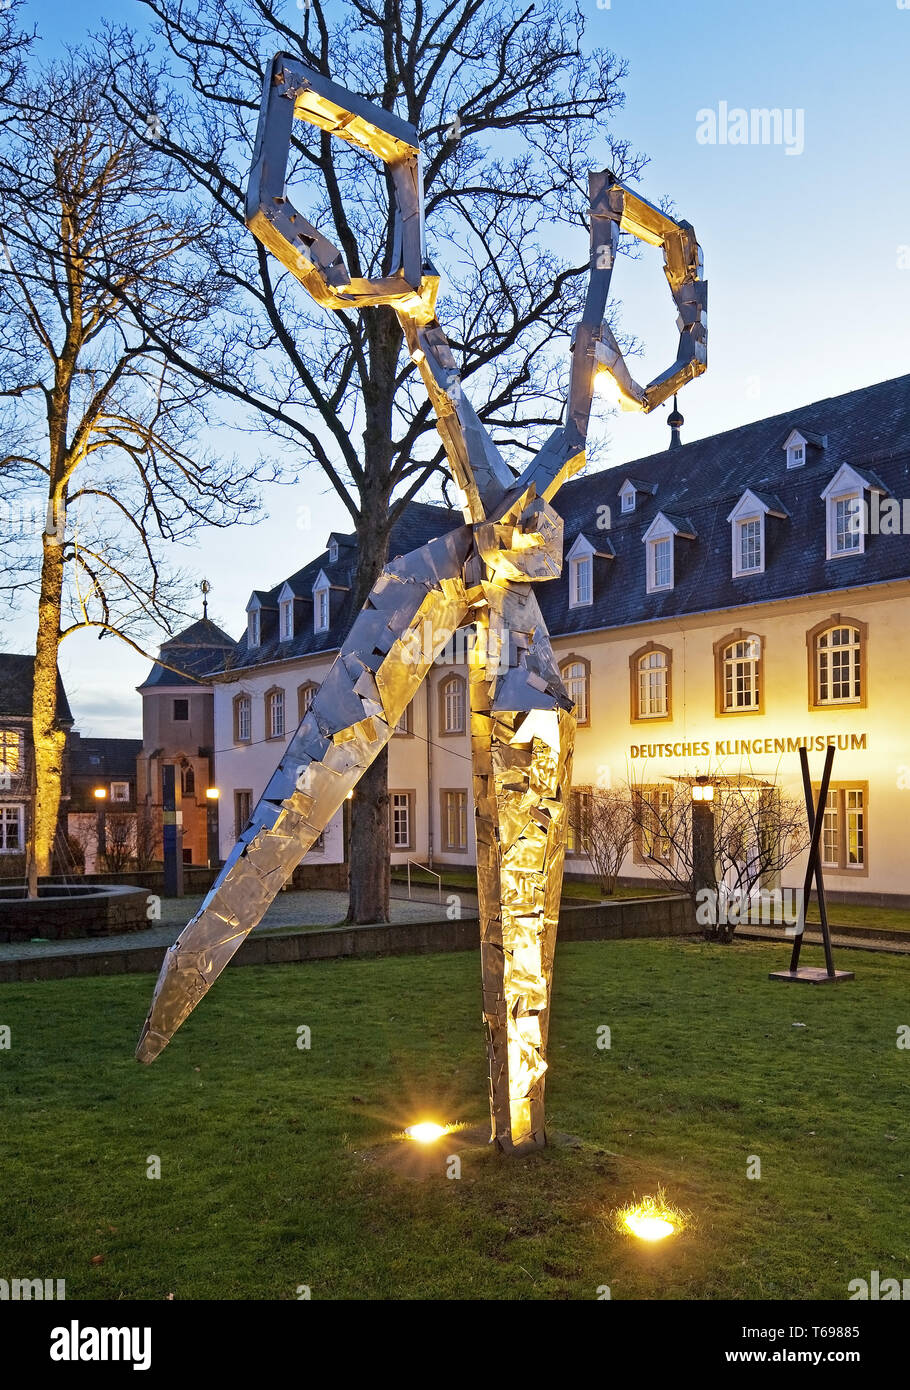 scissors sculpture in front of the German Blade Museum, Solingen, Germany Stock Photo